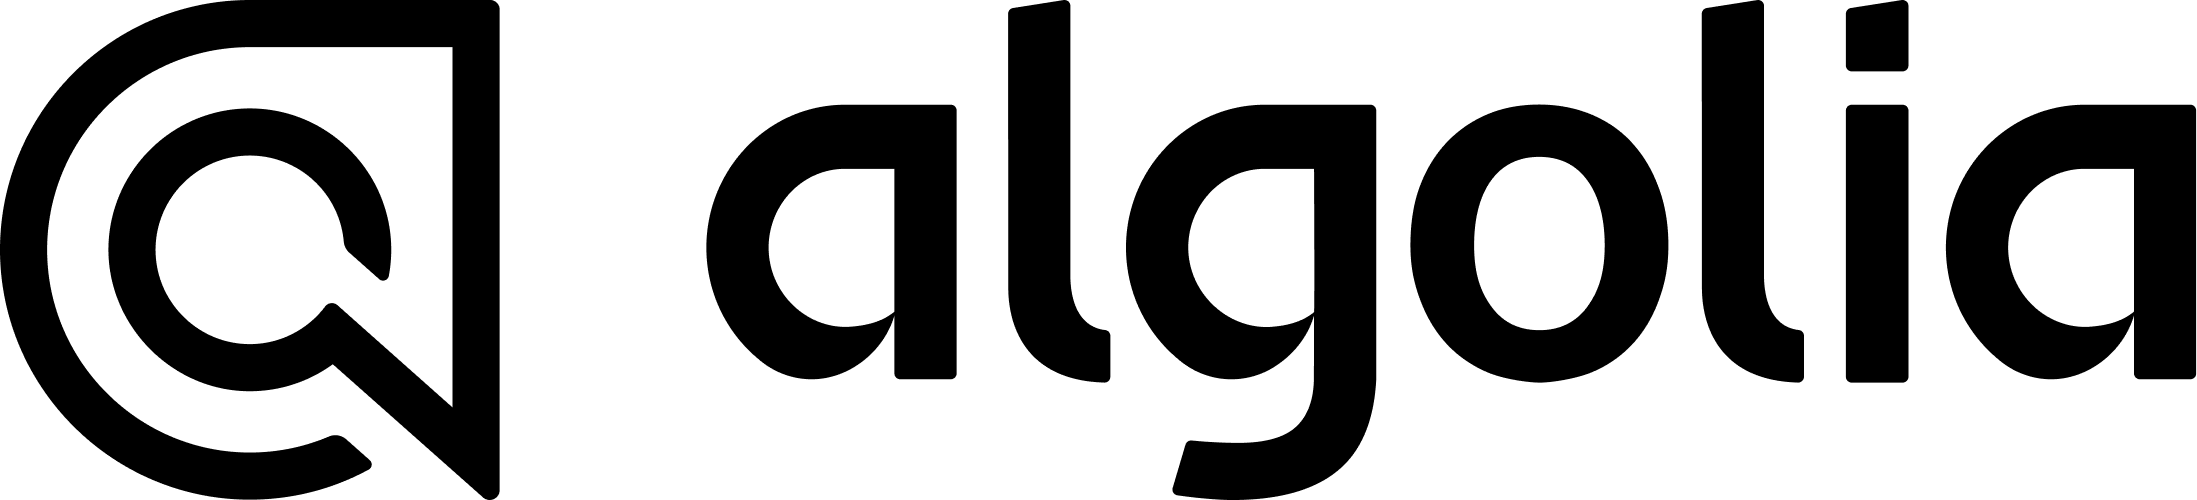 Algolia-logo-white 1